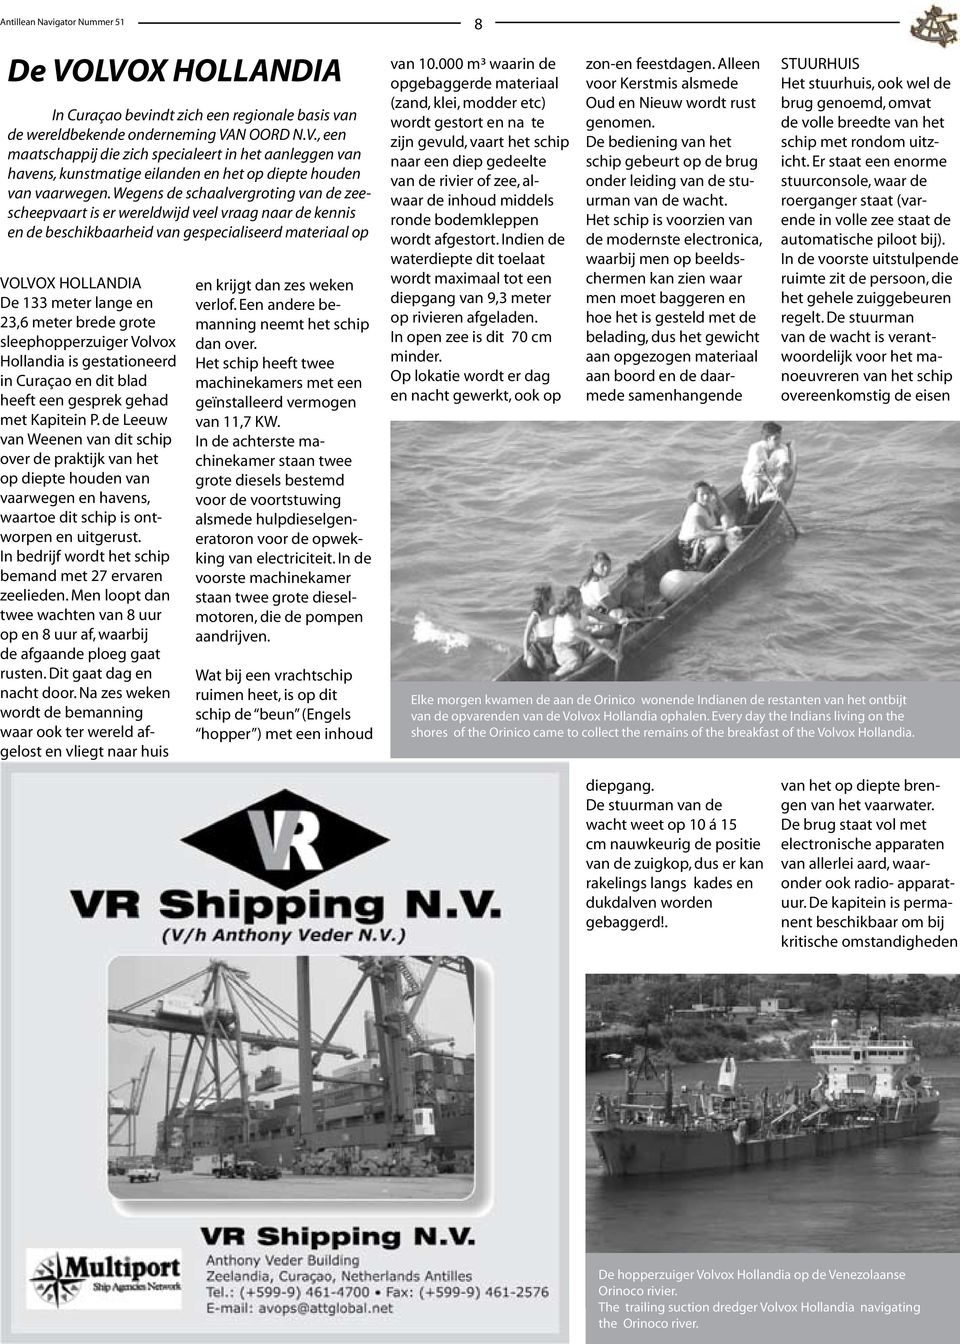 brede grote sleephopperzuiger Volvox Hollandia is gestationeerd in Curaçao en dit blad heeft een gesprek gehad met Kapitein P.